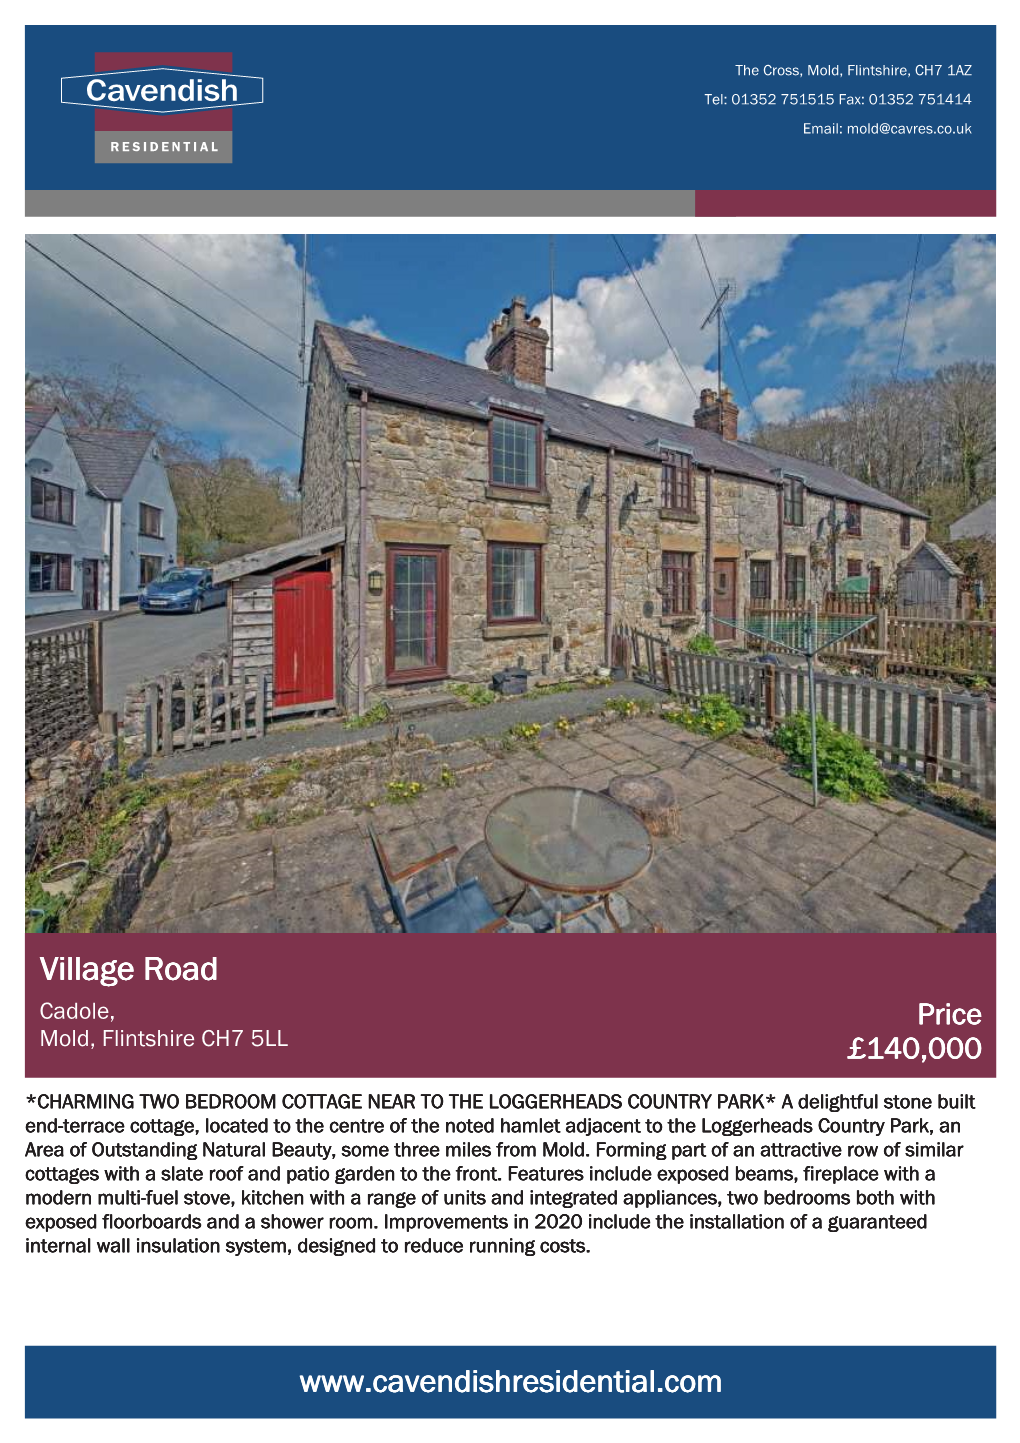 Village Road Cadole, Price Mold, Flintshire CH7 5LL £140,000